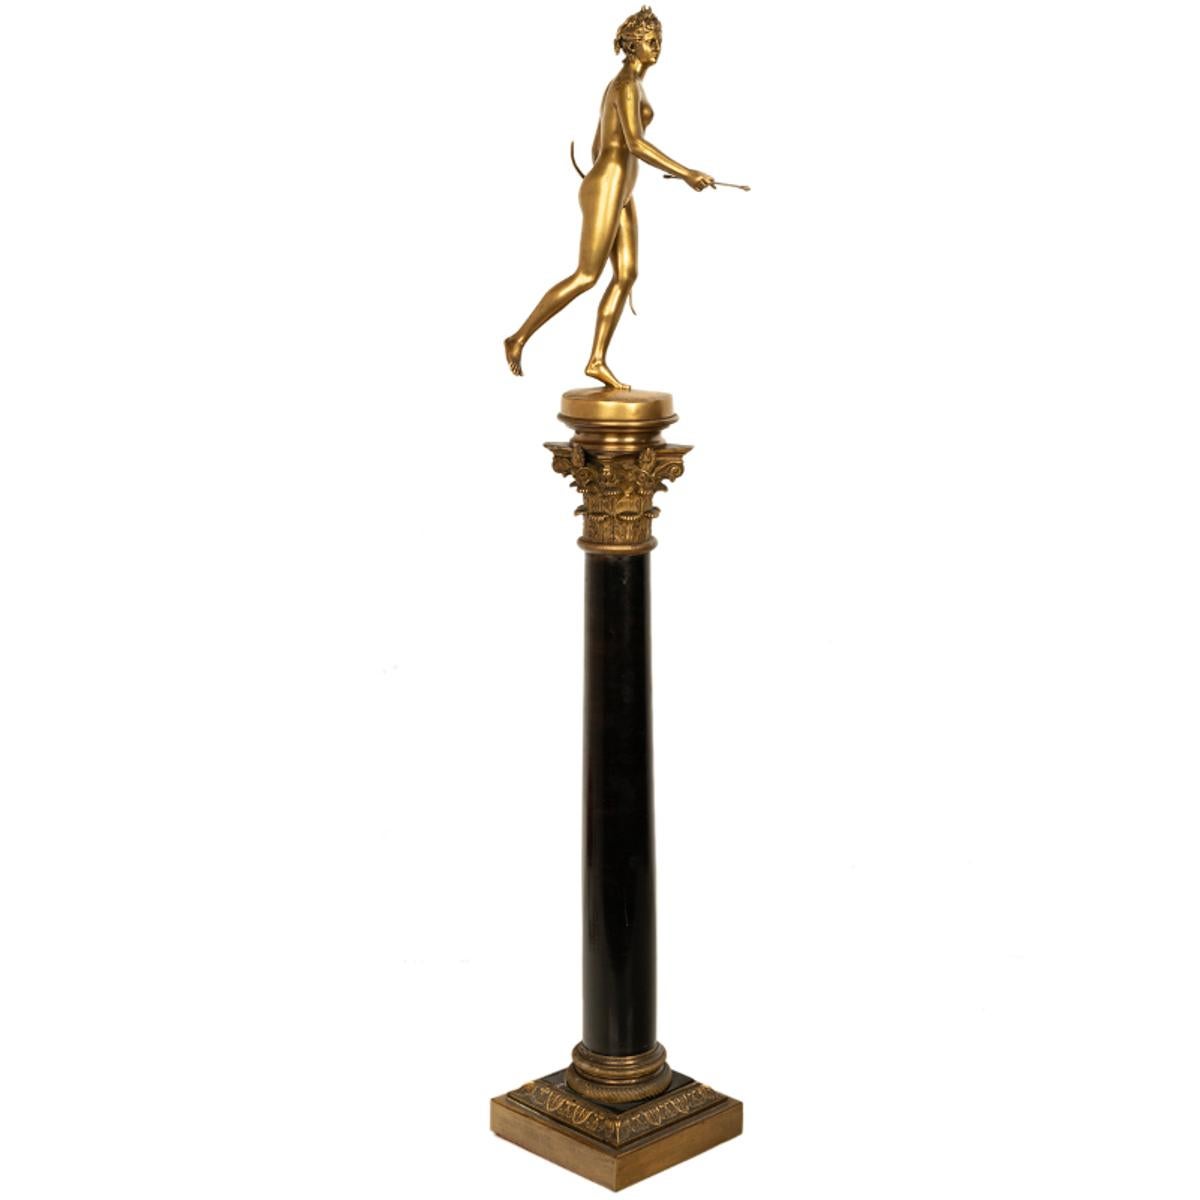 Une belle et grande colonne de Diane en bronze doré sur marbre, coulée par Ferdinand Barbedienne (1810-1892) d'après une statue de Jean Antoine Houdon (1741-1828), le bronze datant d'environ 1838.
Ce bronze néoclassique très élégant représente Diane